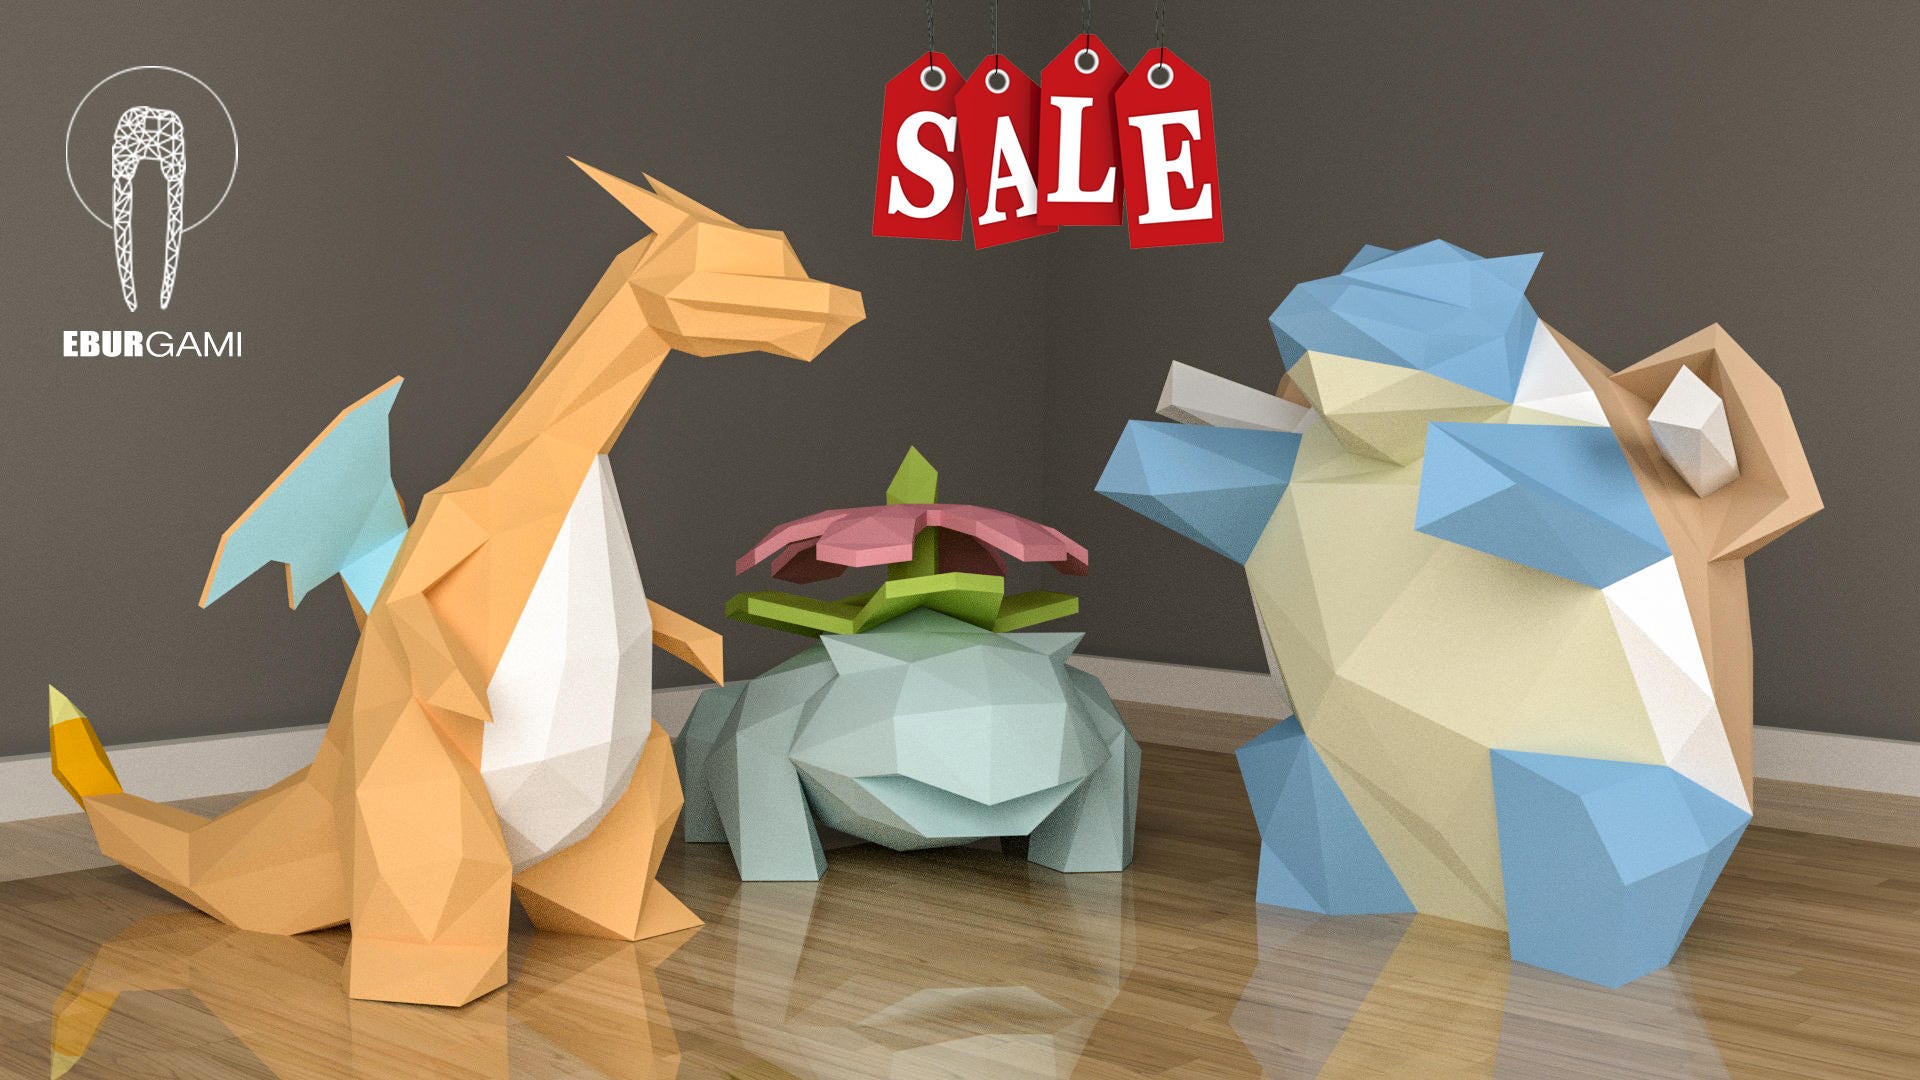 Оригами из бумаги 3 д: 14 моделей от мастеров 3D-оригами, которые можно повторить дома / AdMe